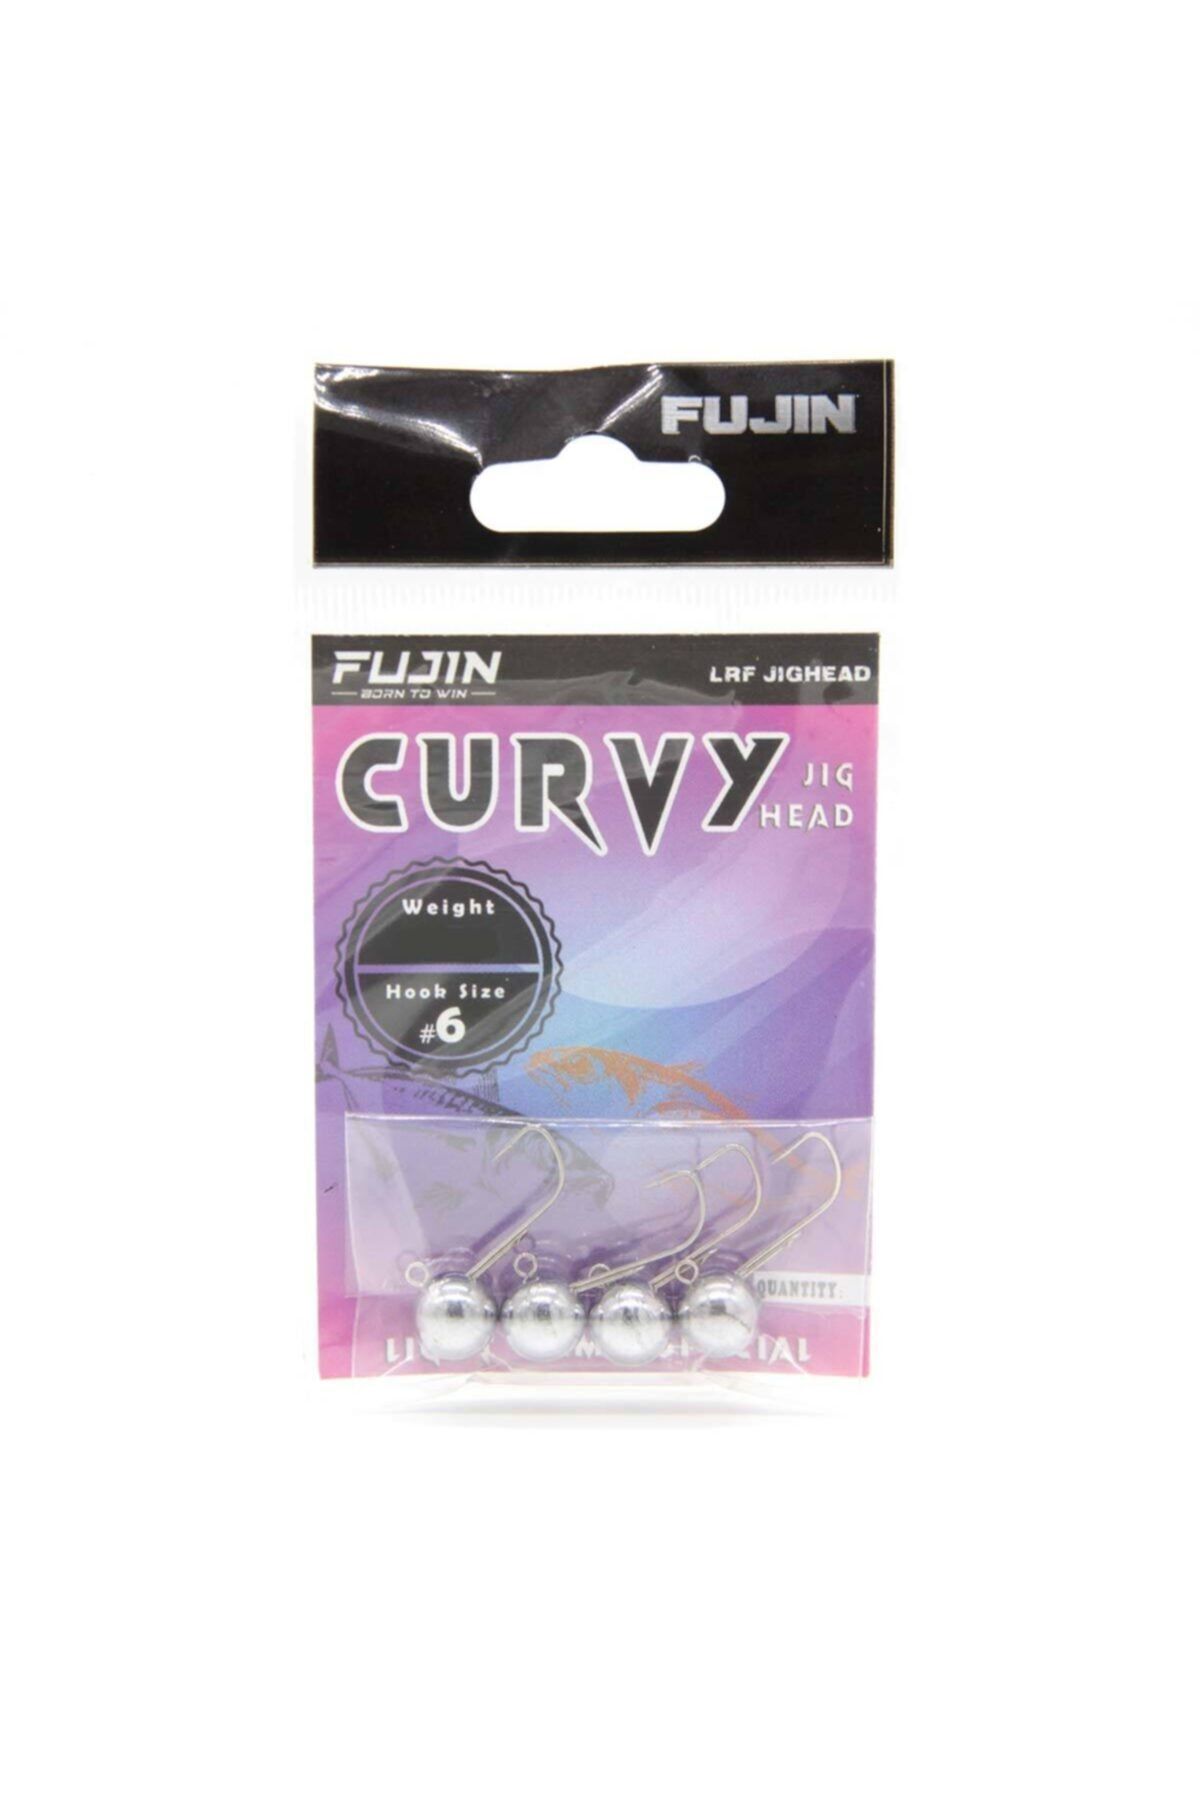 Fujin Curvy N°6 Lrf Jig Head 3,5 gr